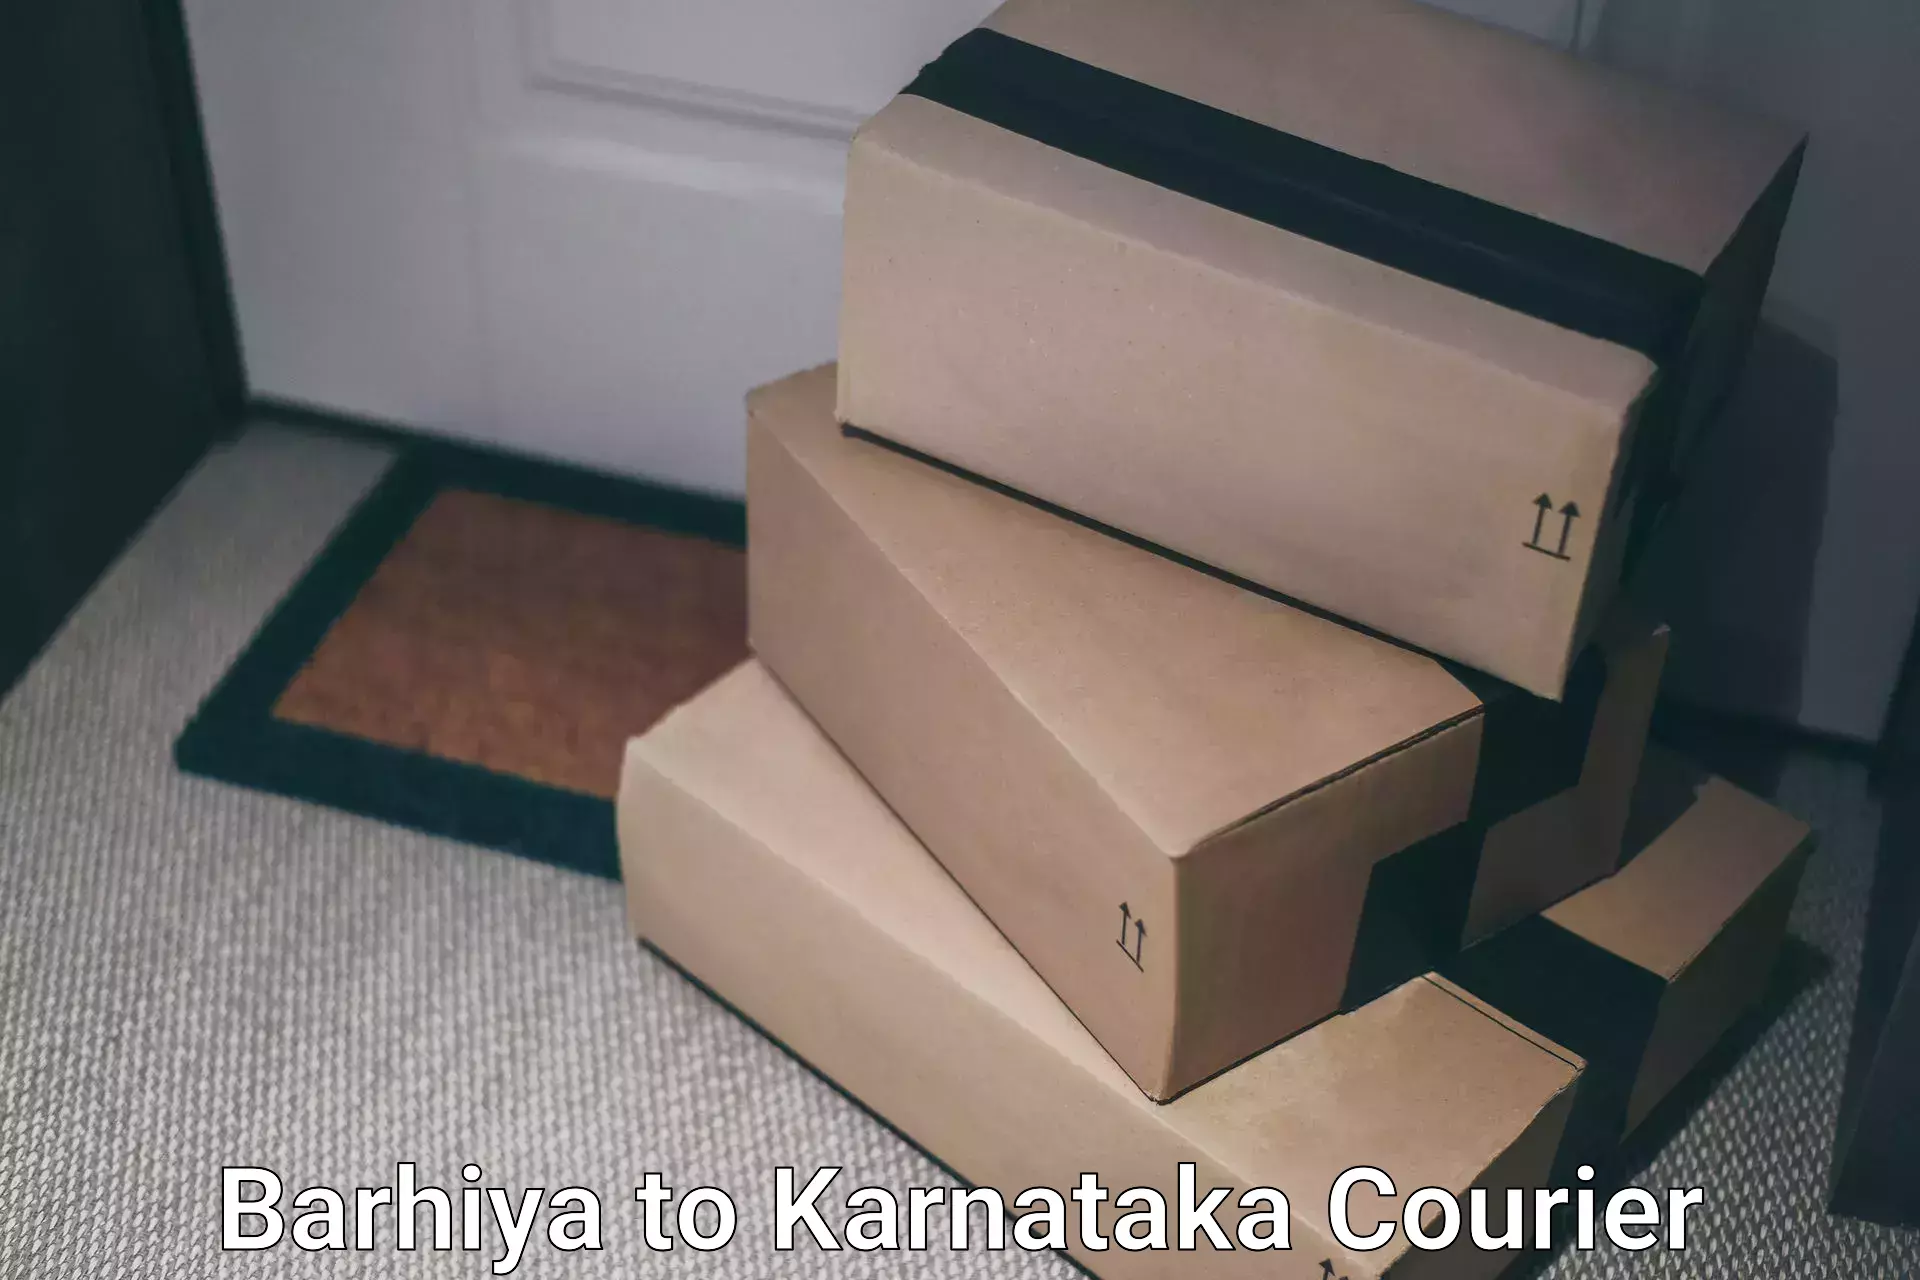 Heavy parcel delivery Barhiya to Karnataka